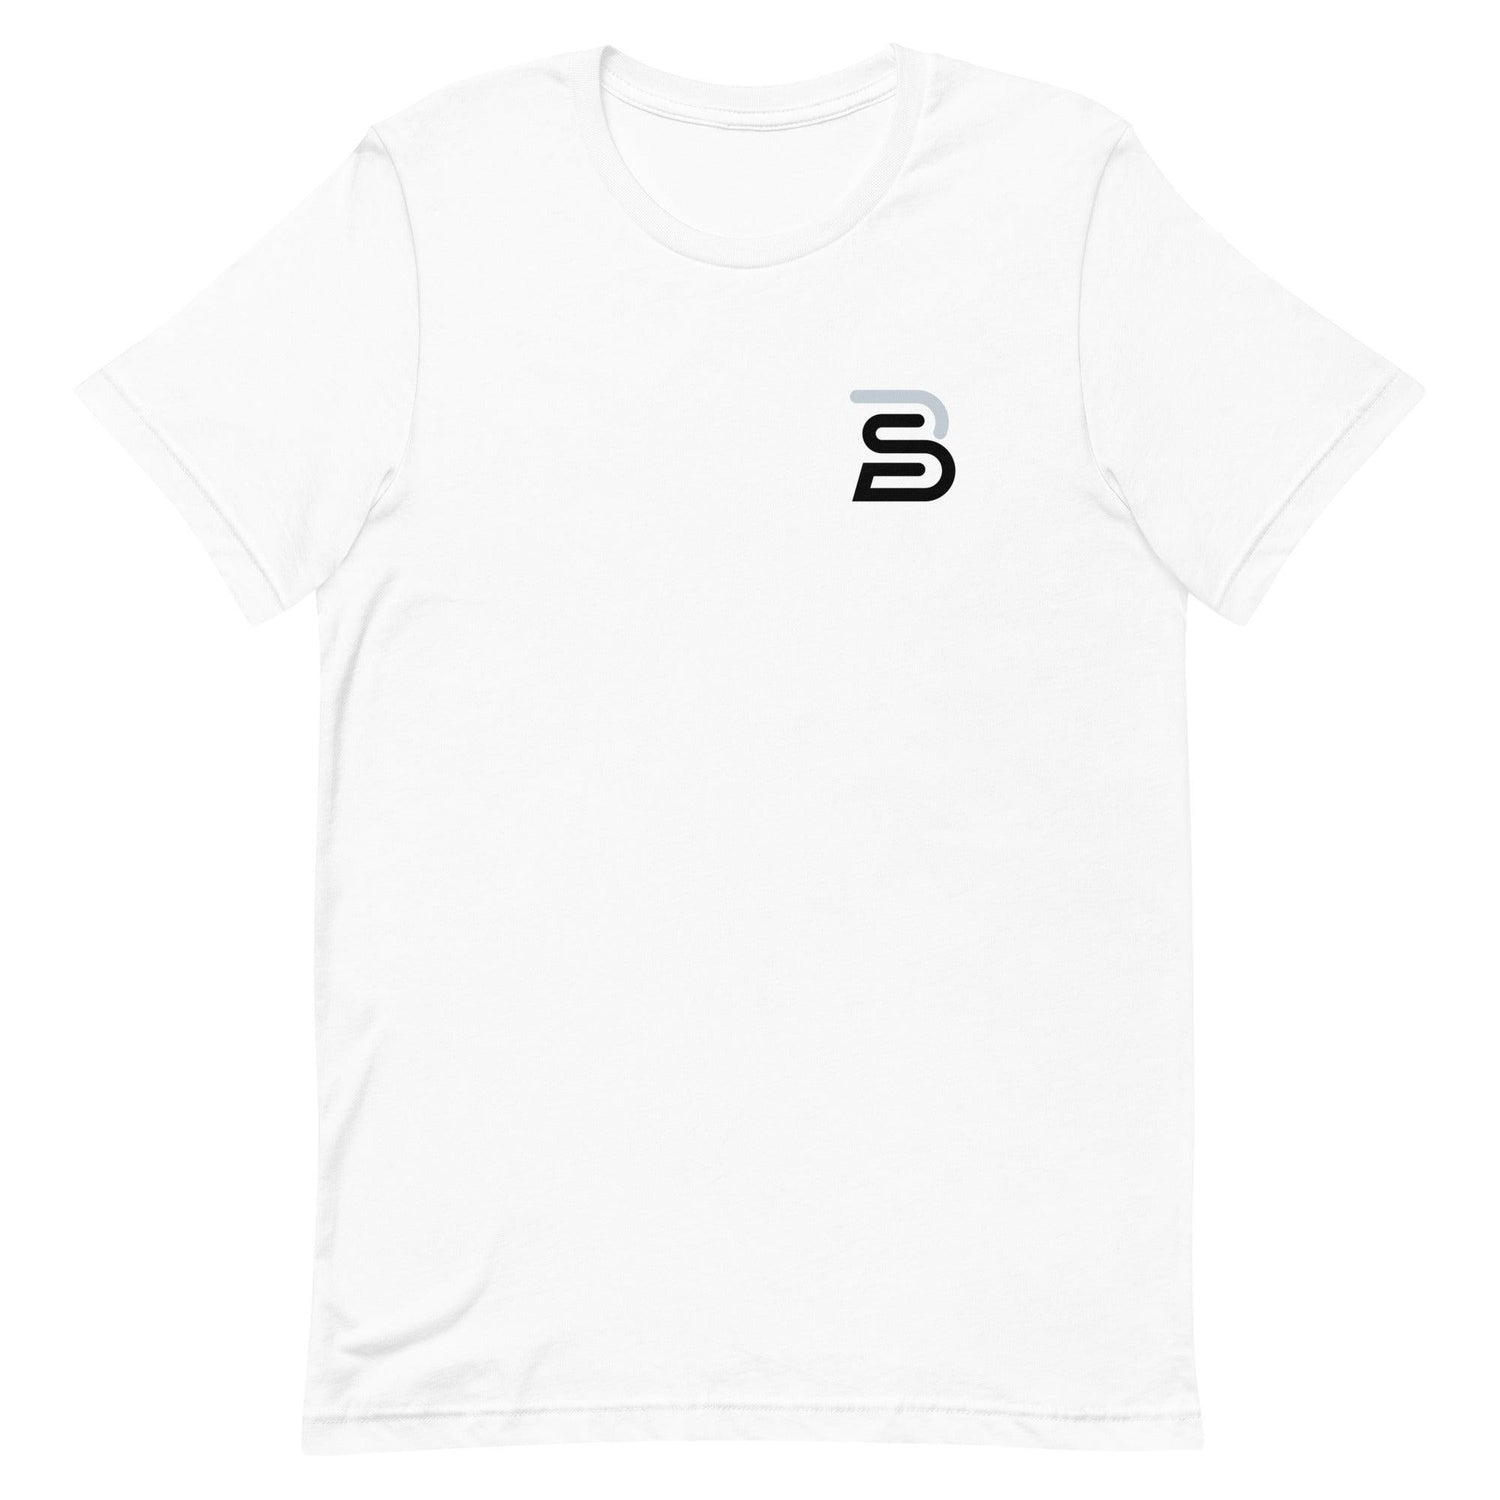 Bennett Sousa “BS” t-shirt - Fan Arch